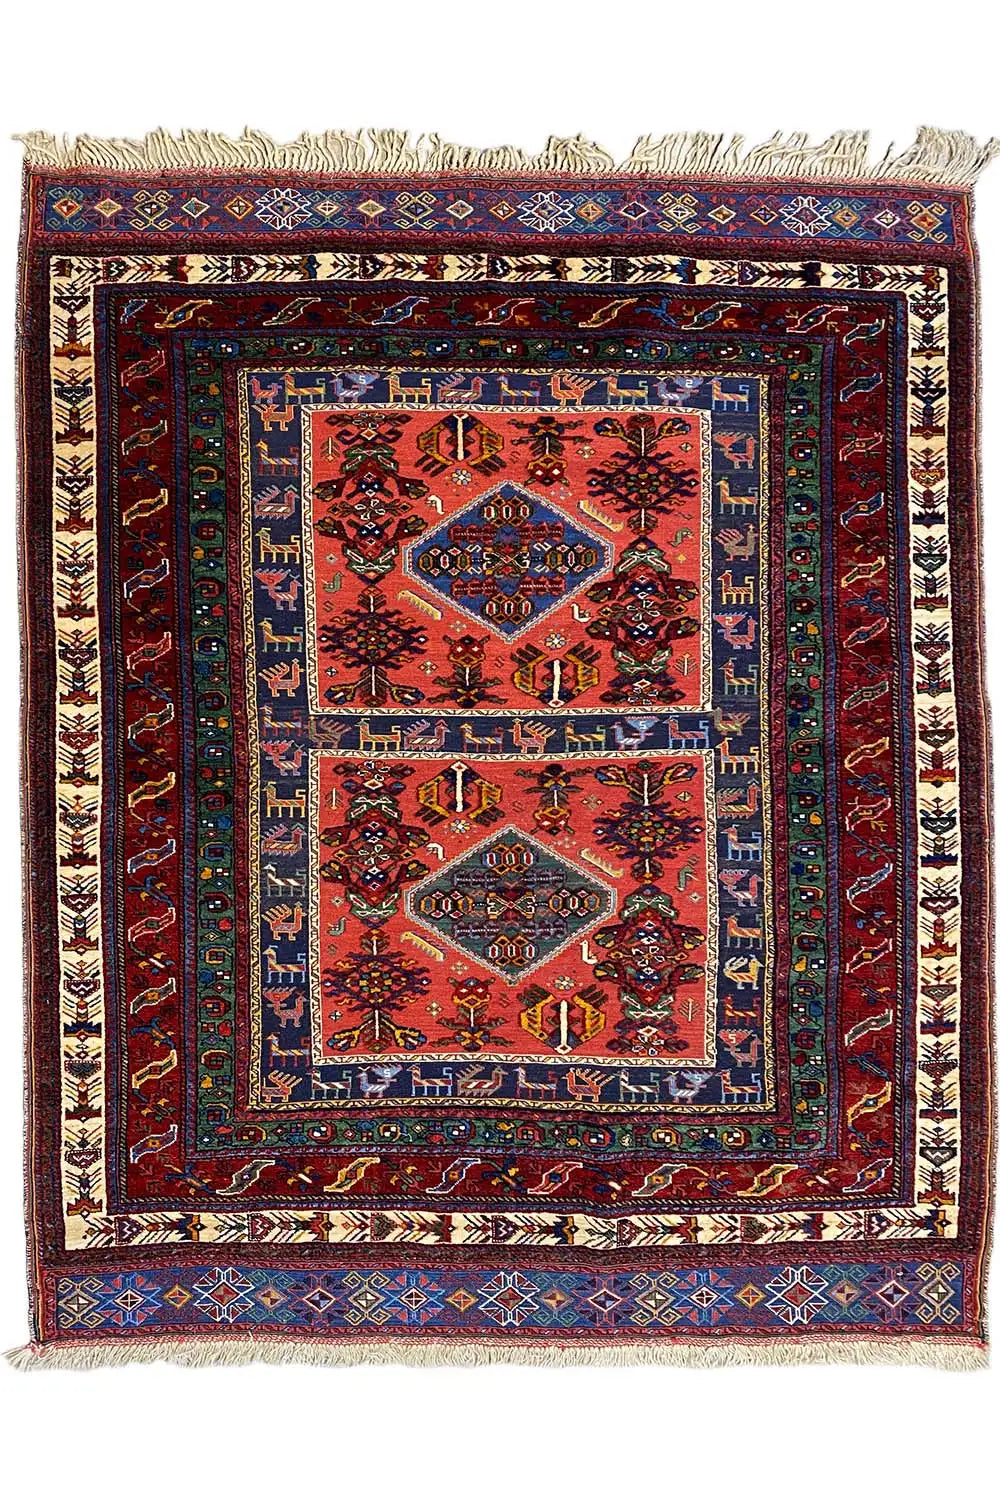 Soumakh (188x144cm) - German Carpet Shop